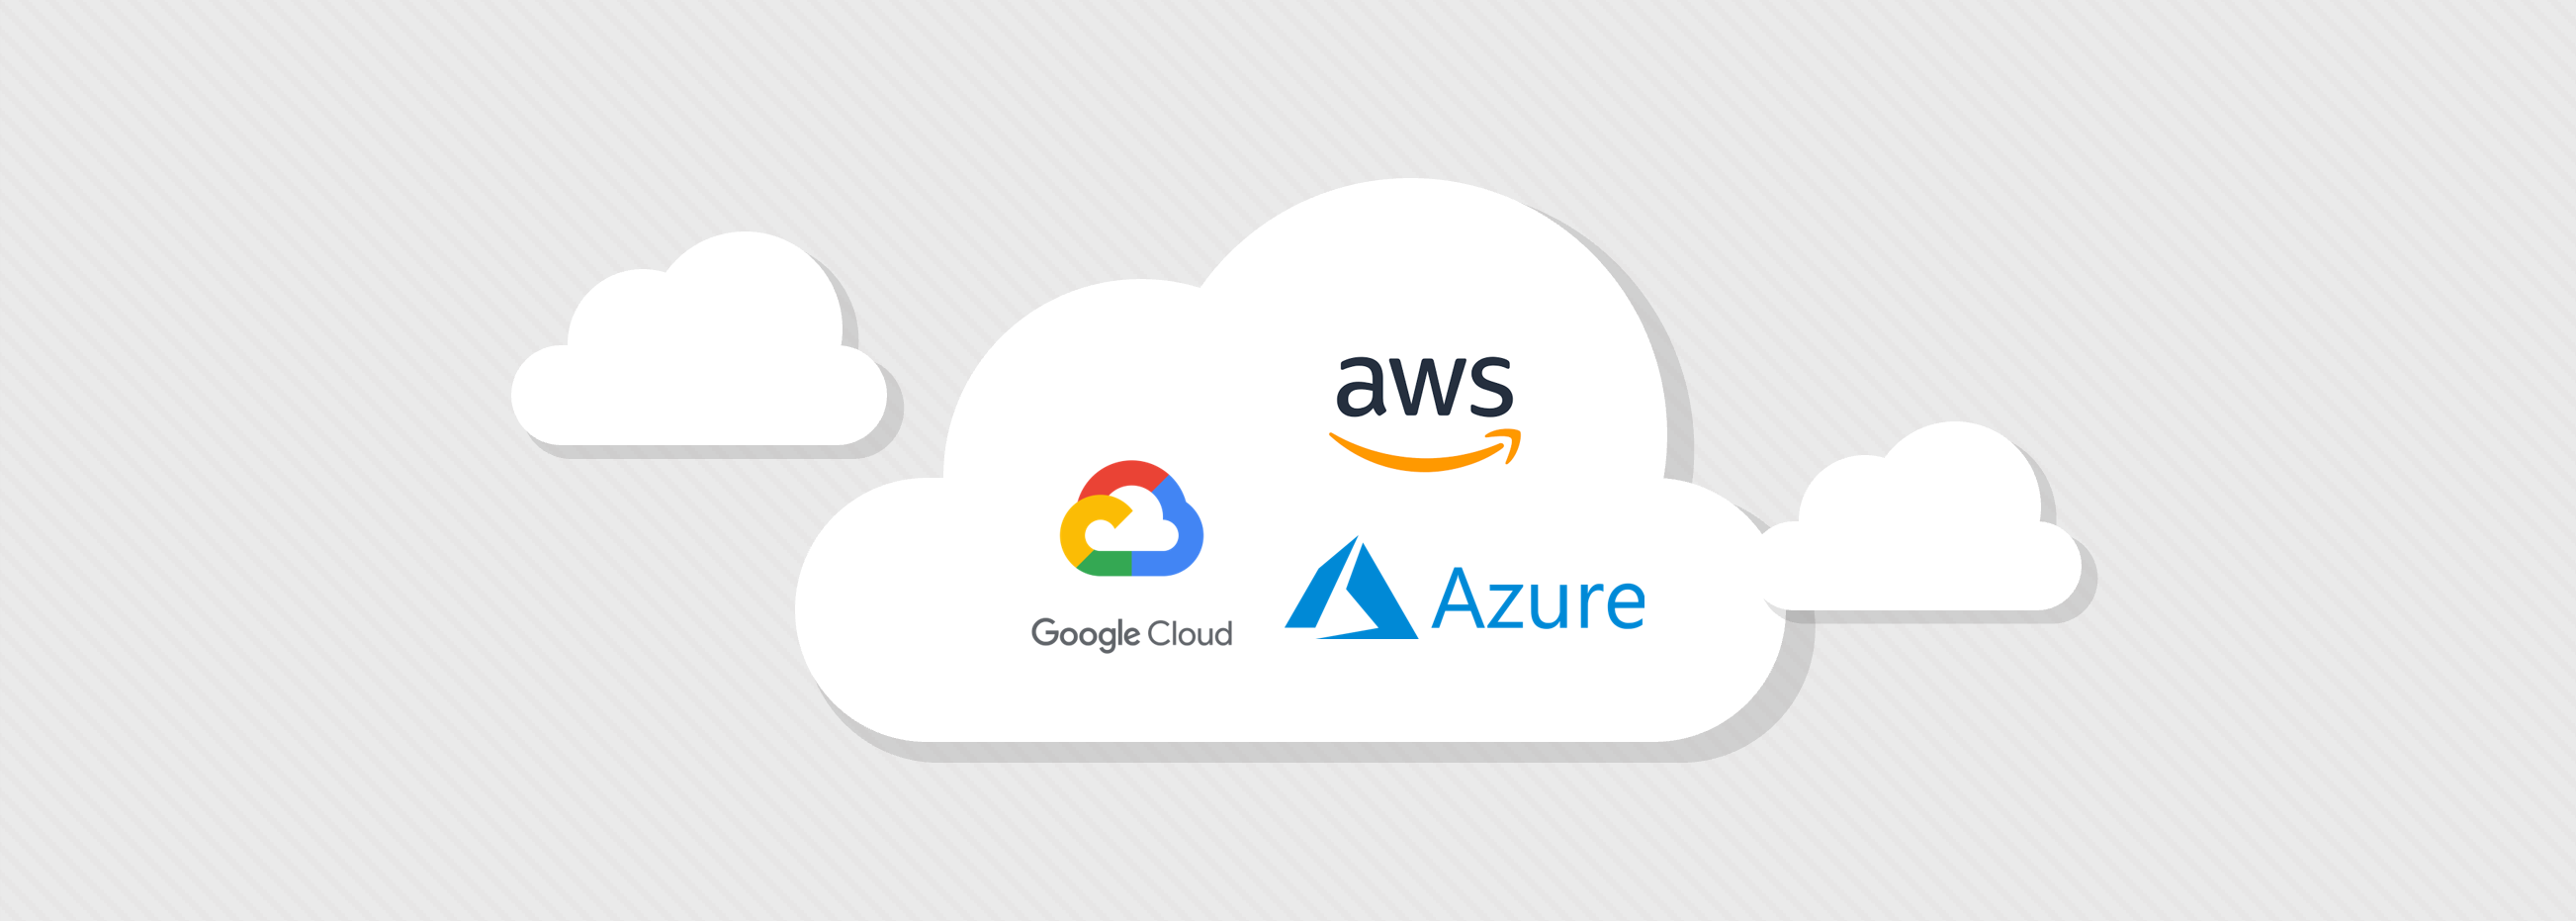 【AWS ・Google Cloud・Azure】無料枠の比較・利用方法をご紹介